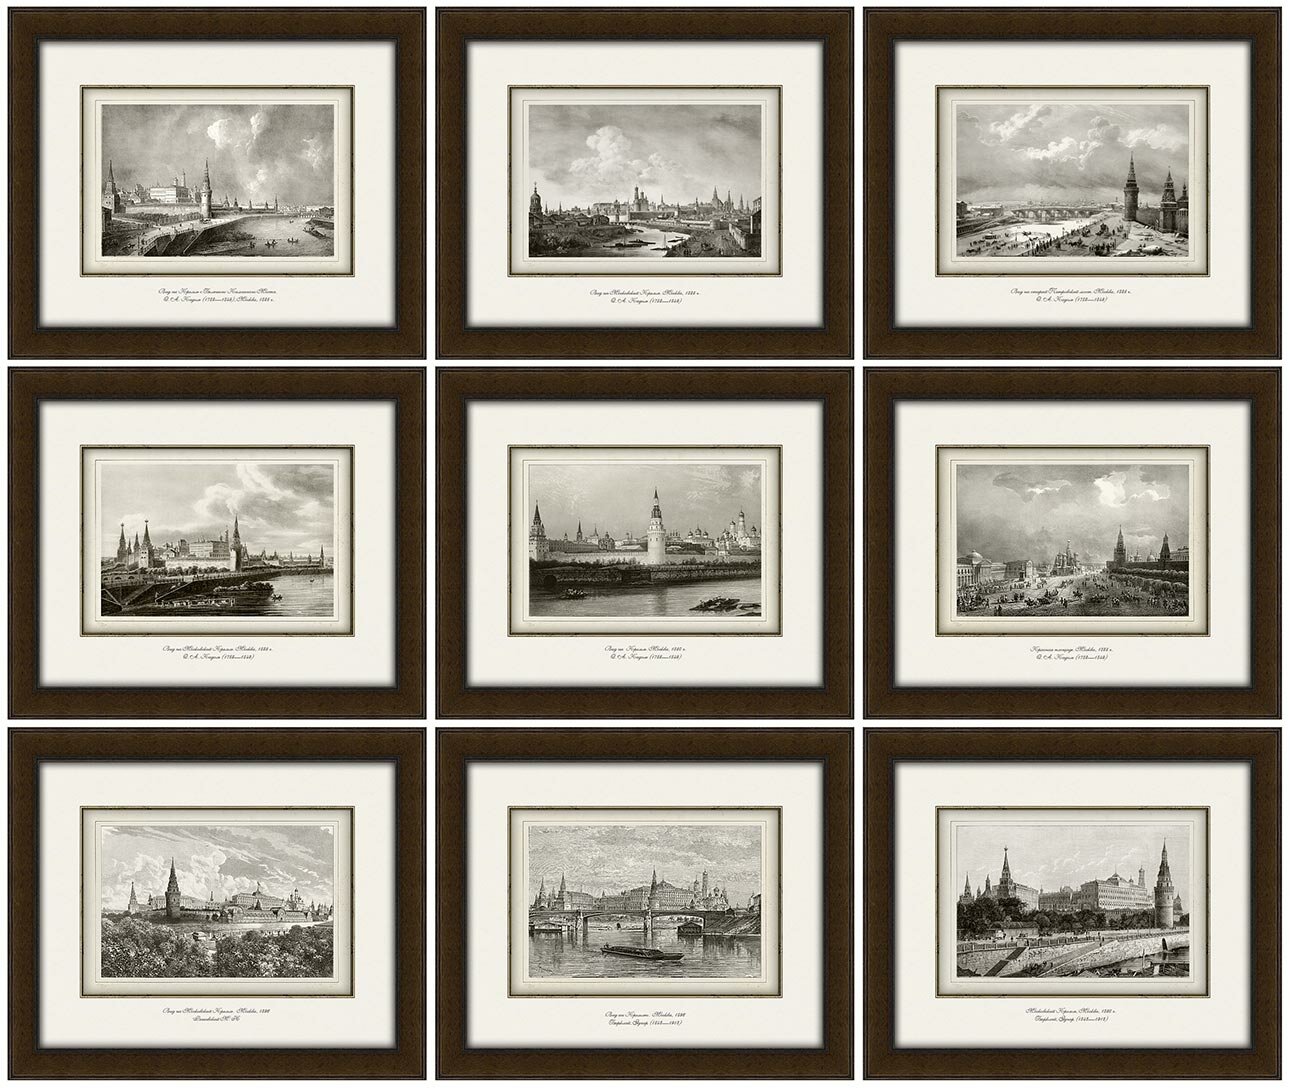 Виды старой Москвы в гравюрах 19 века (факсимиле) 9 картин (Италия) - 100 шт.